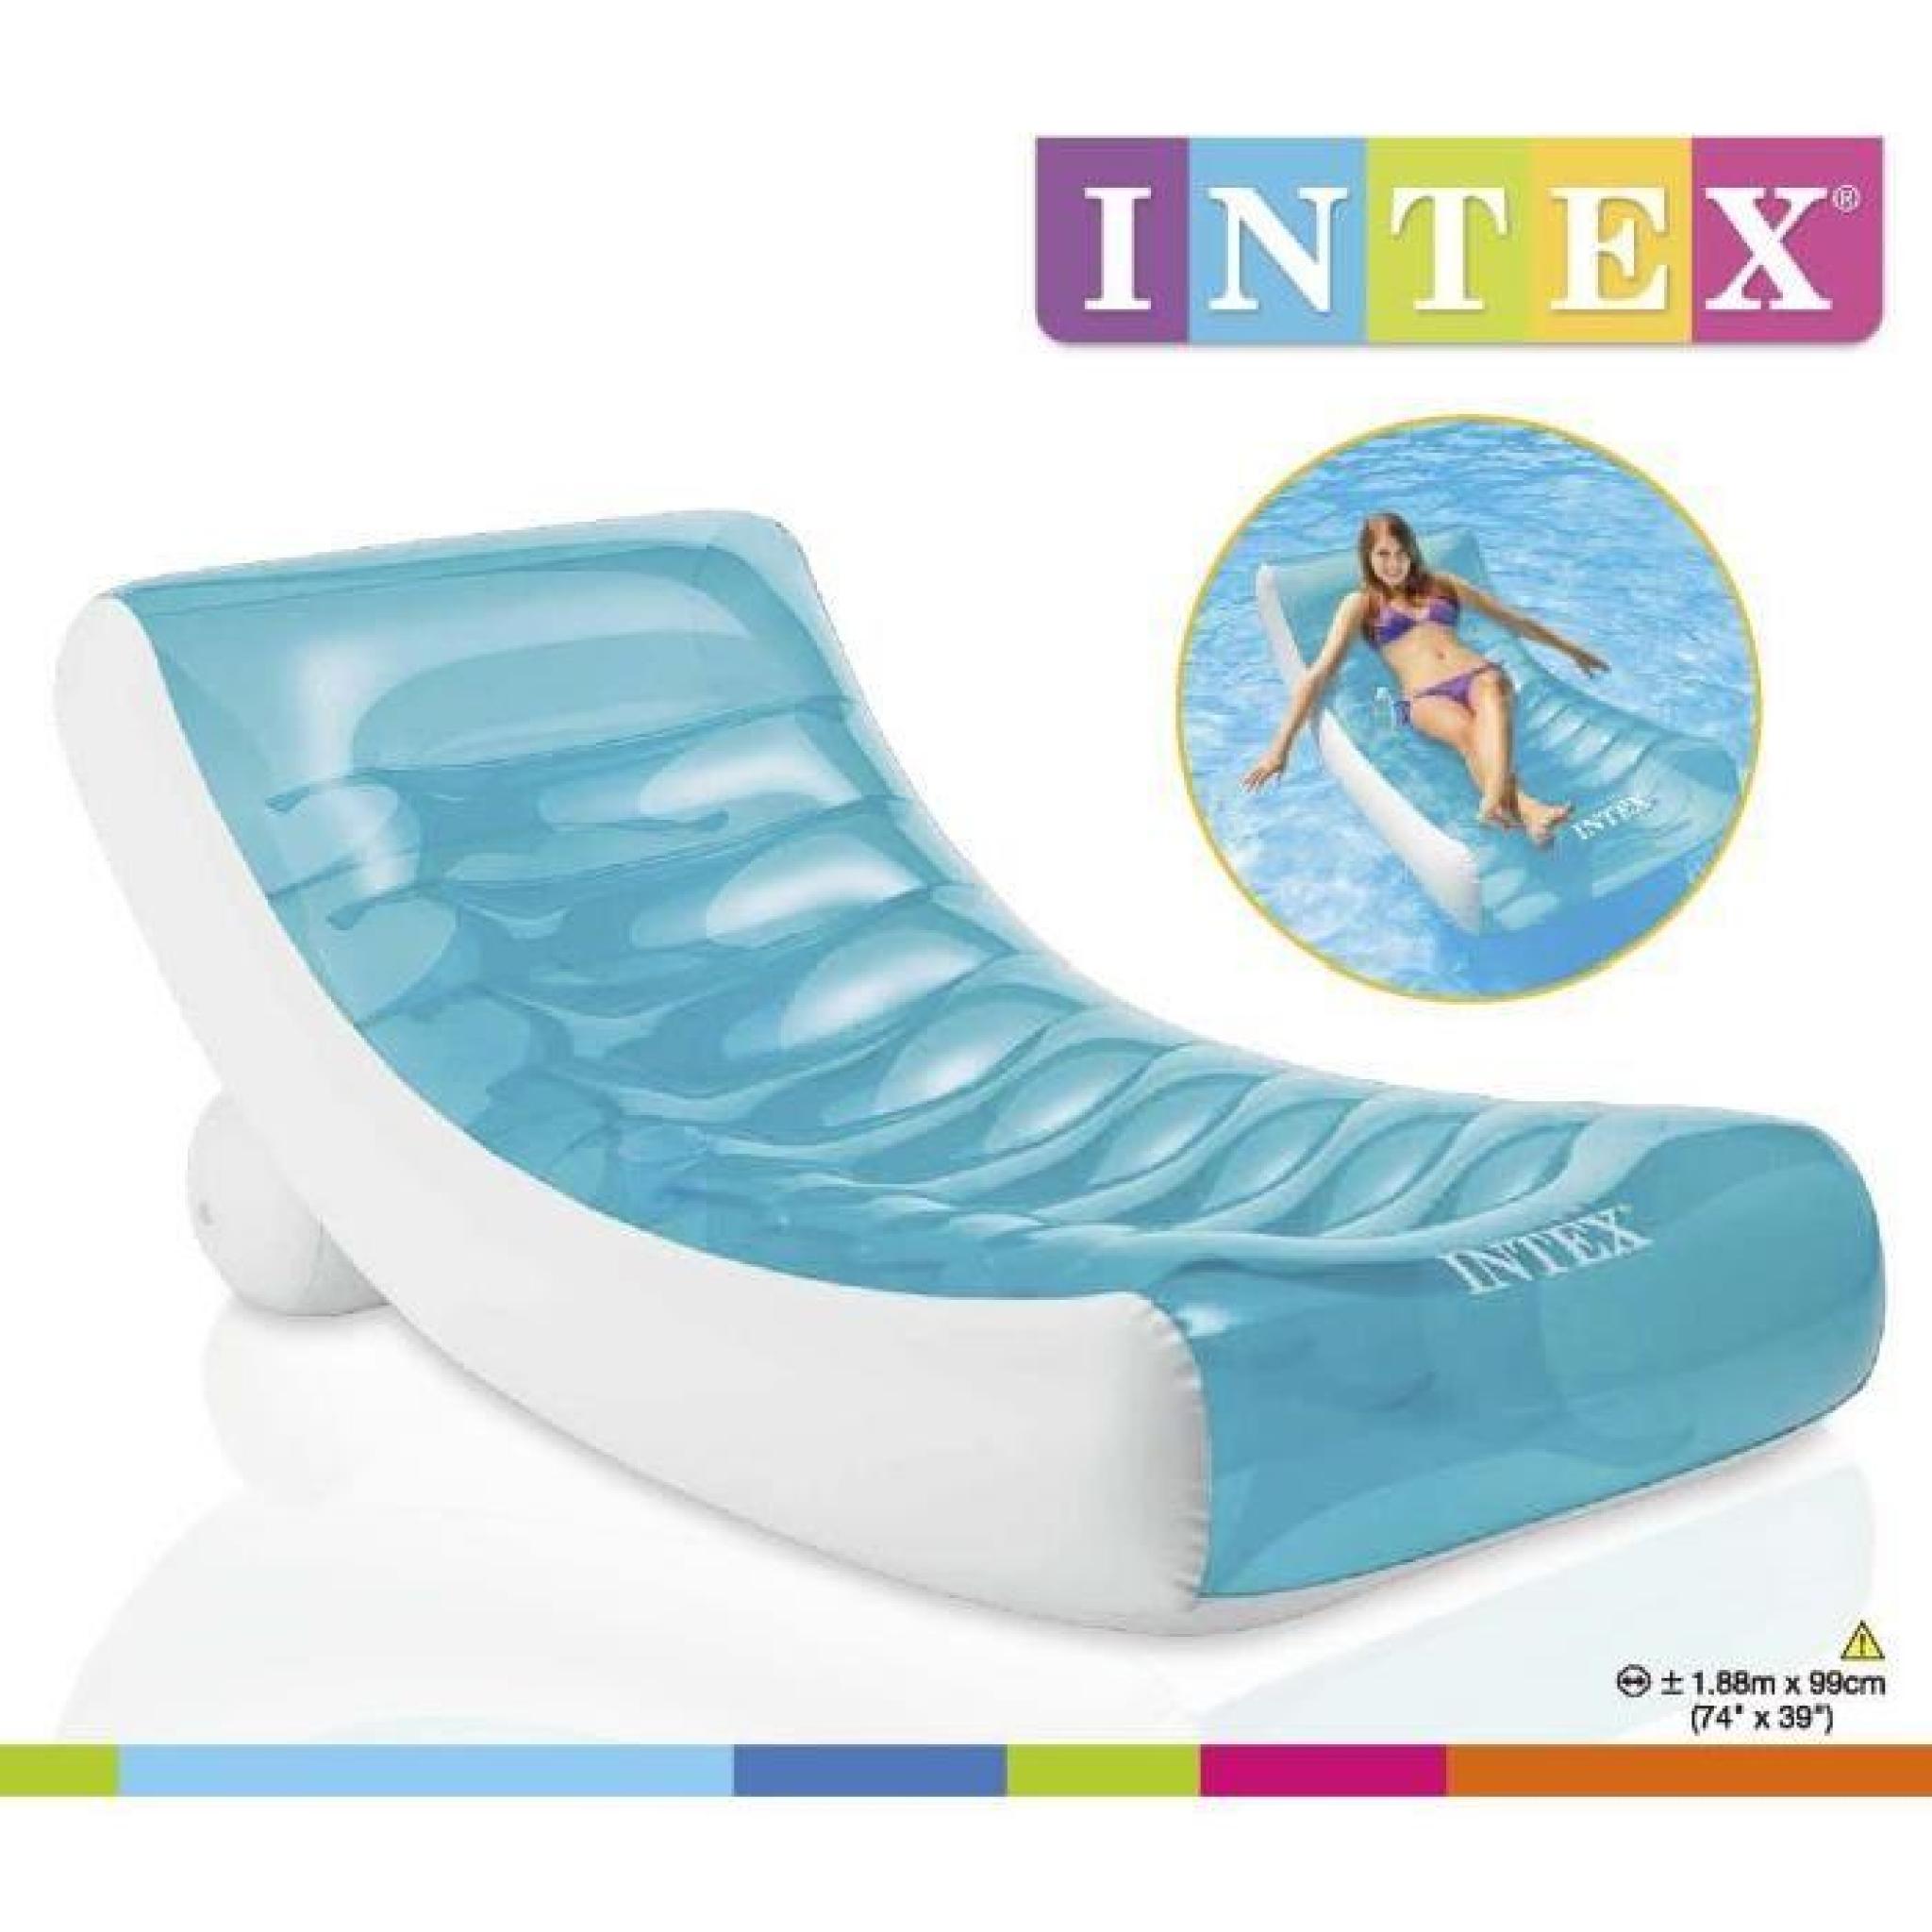 INTEX Matelas gonflable adulte pour piscine Lounge 188 X 99 Cm pas cher